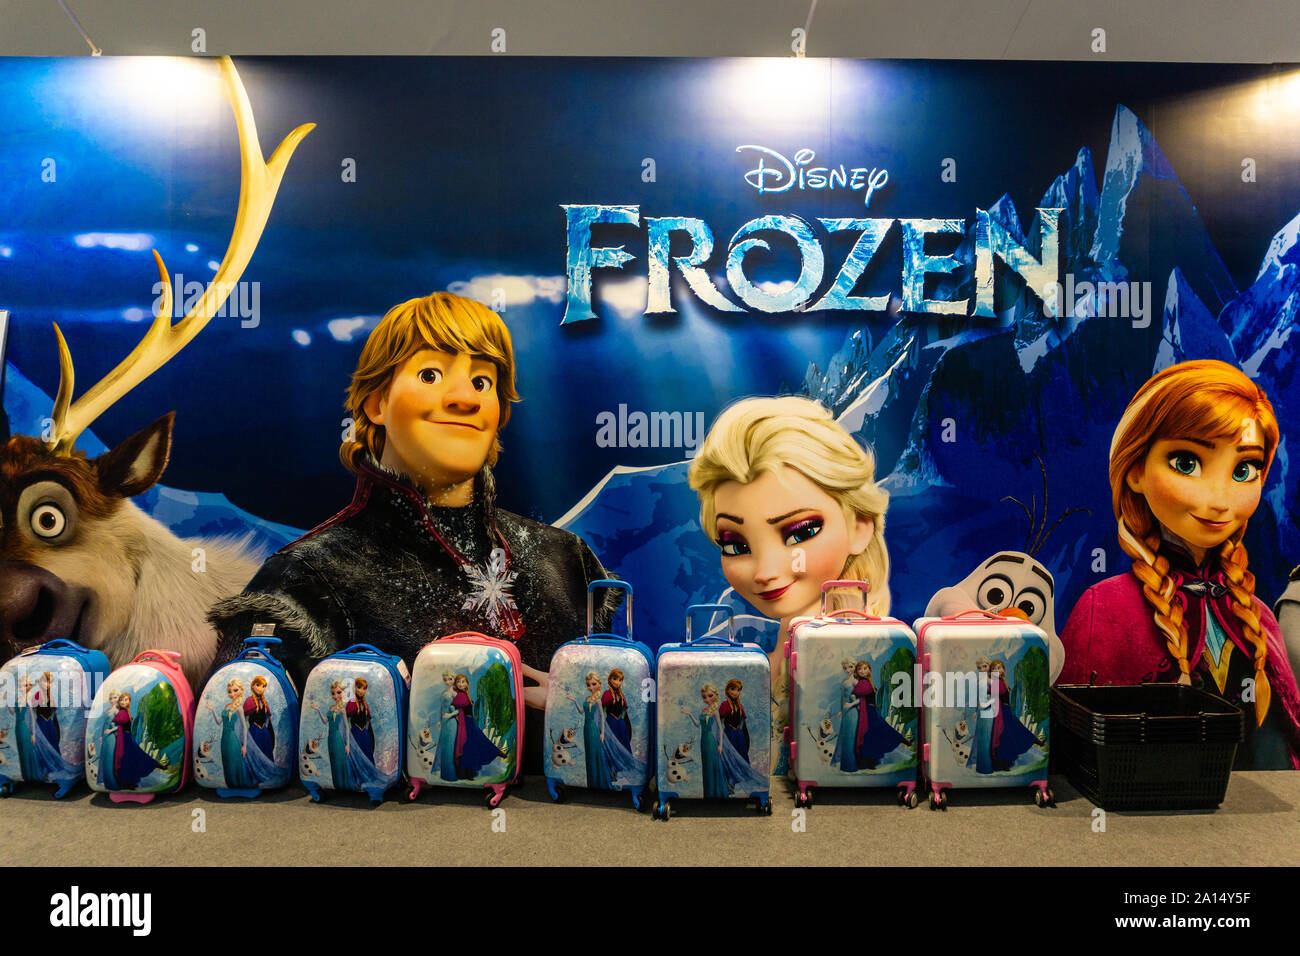 Affichage congelé de Disney en Chine continentale Banque D'Images